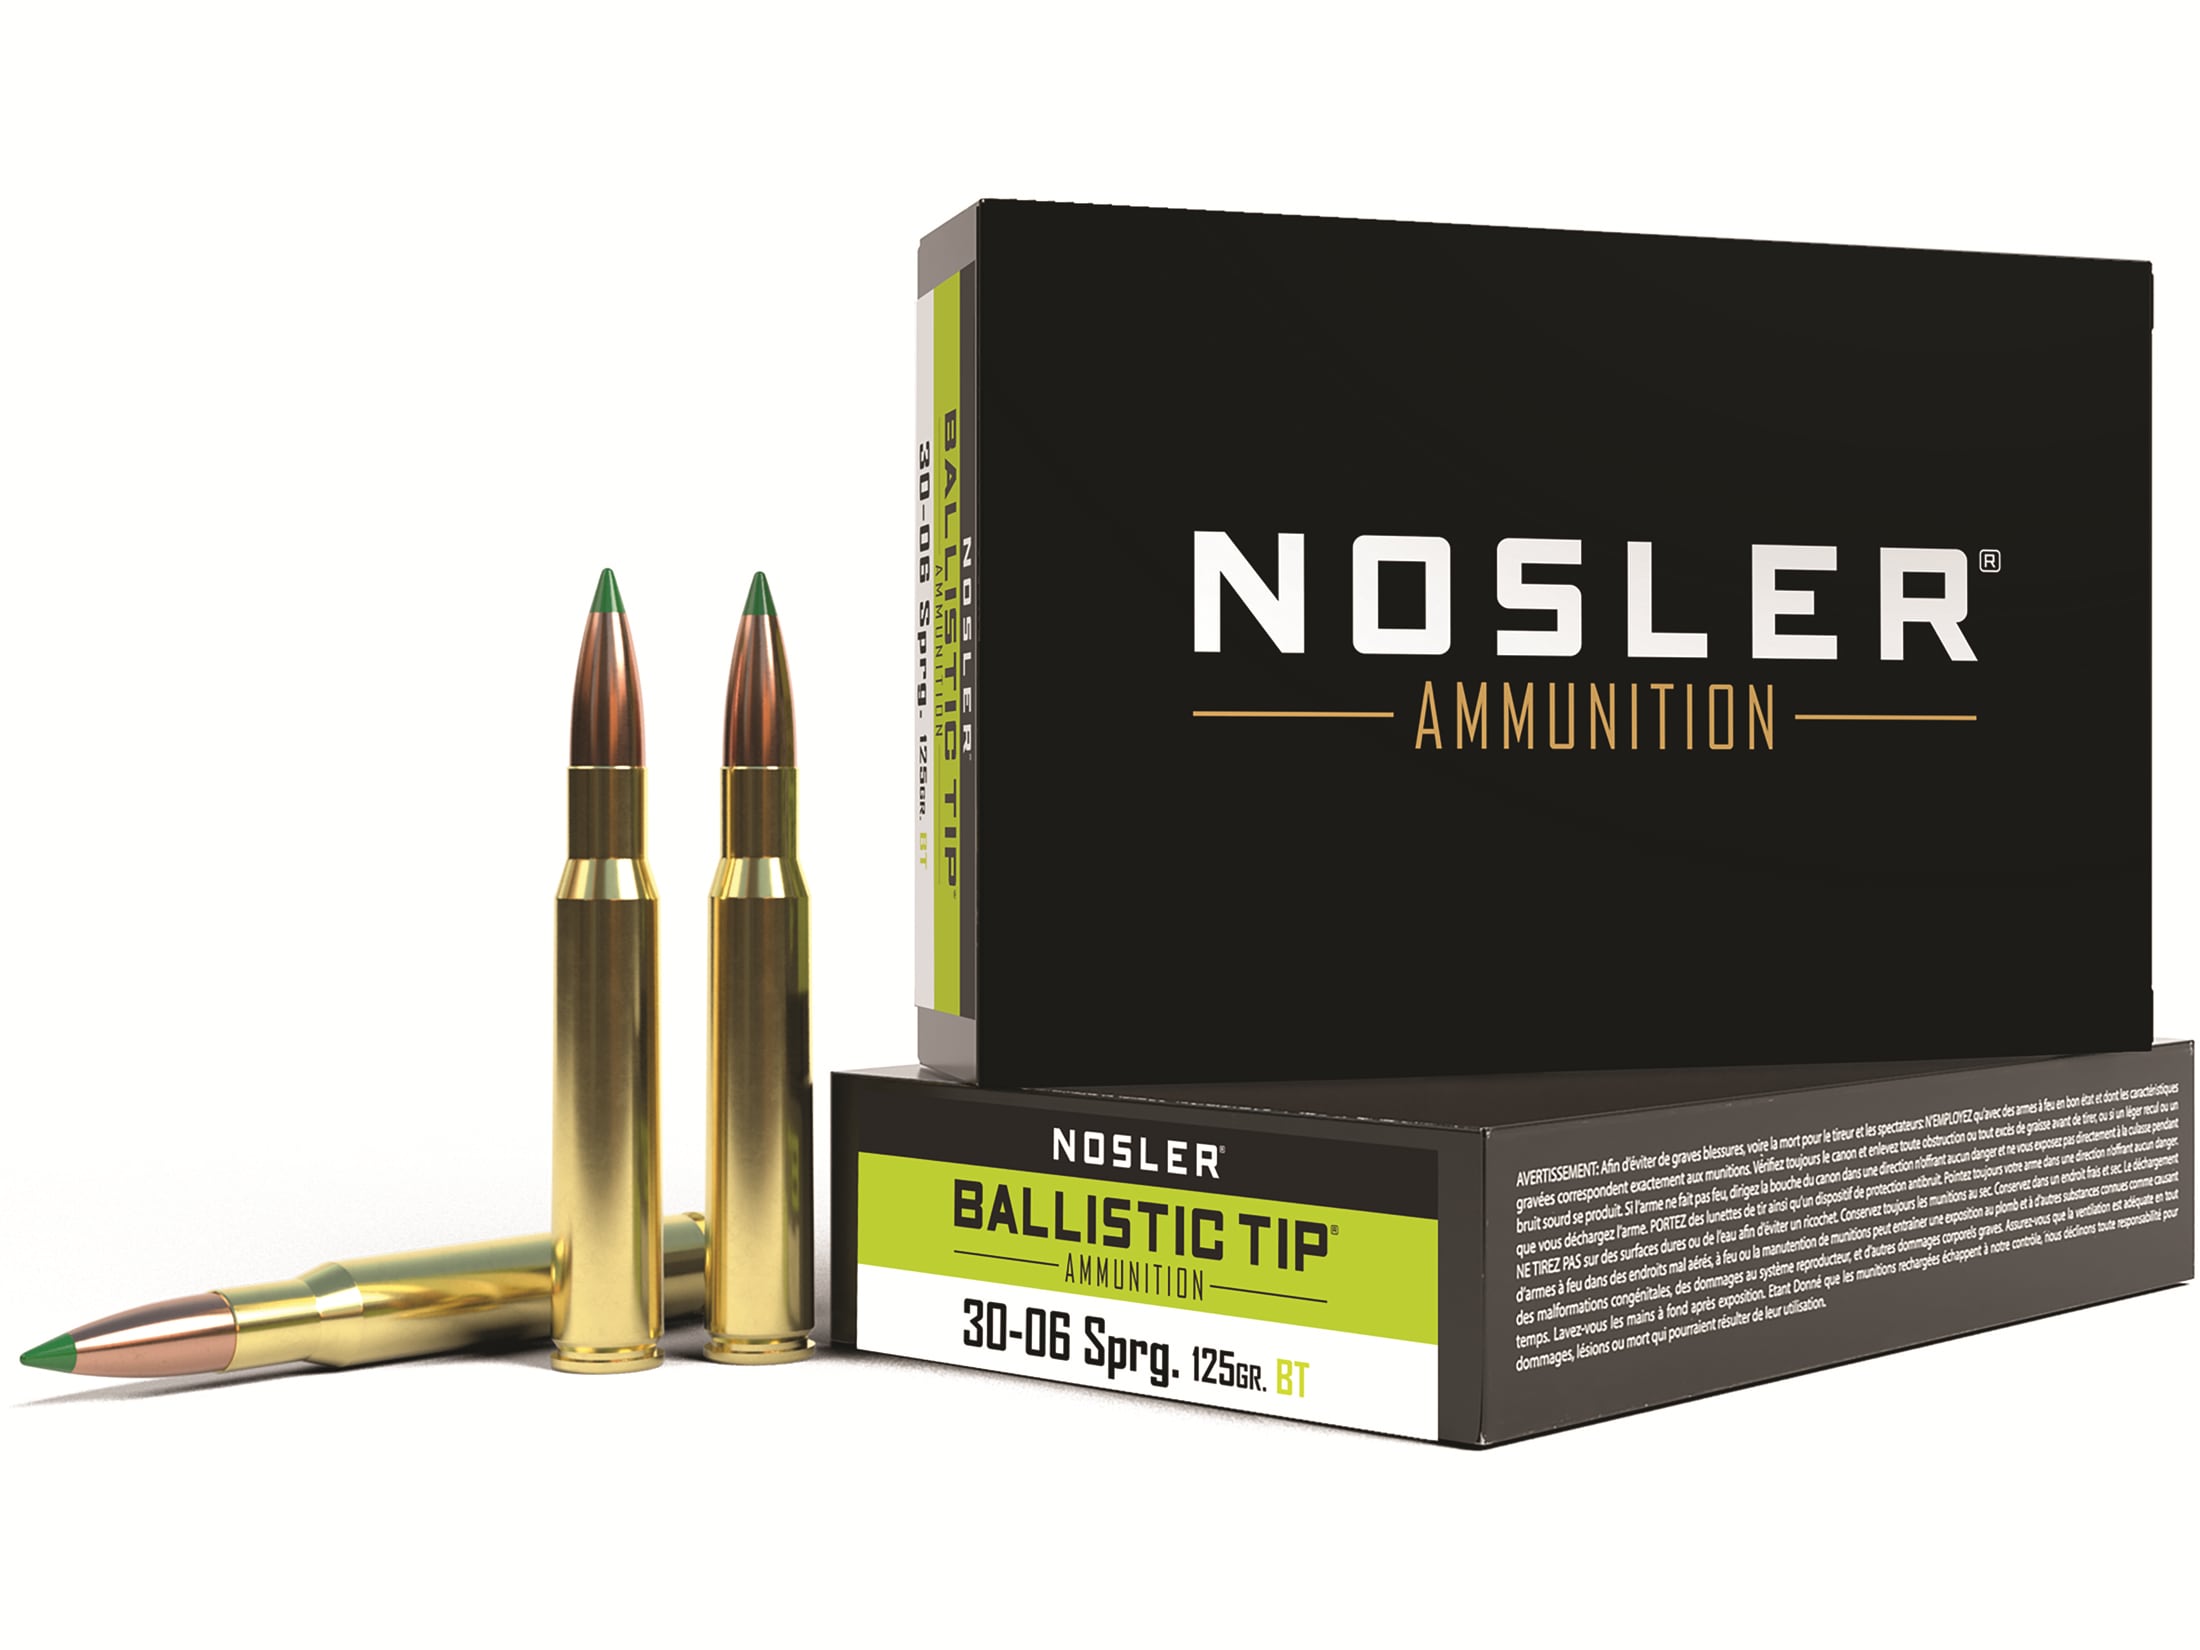 Nosler Ballistic Tip ammunition is loaded using premium Nosler components t...